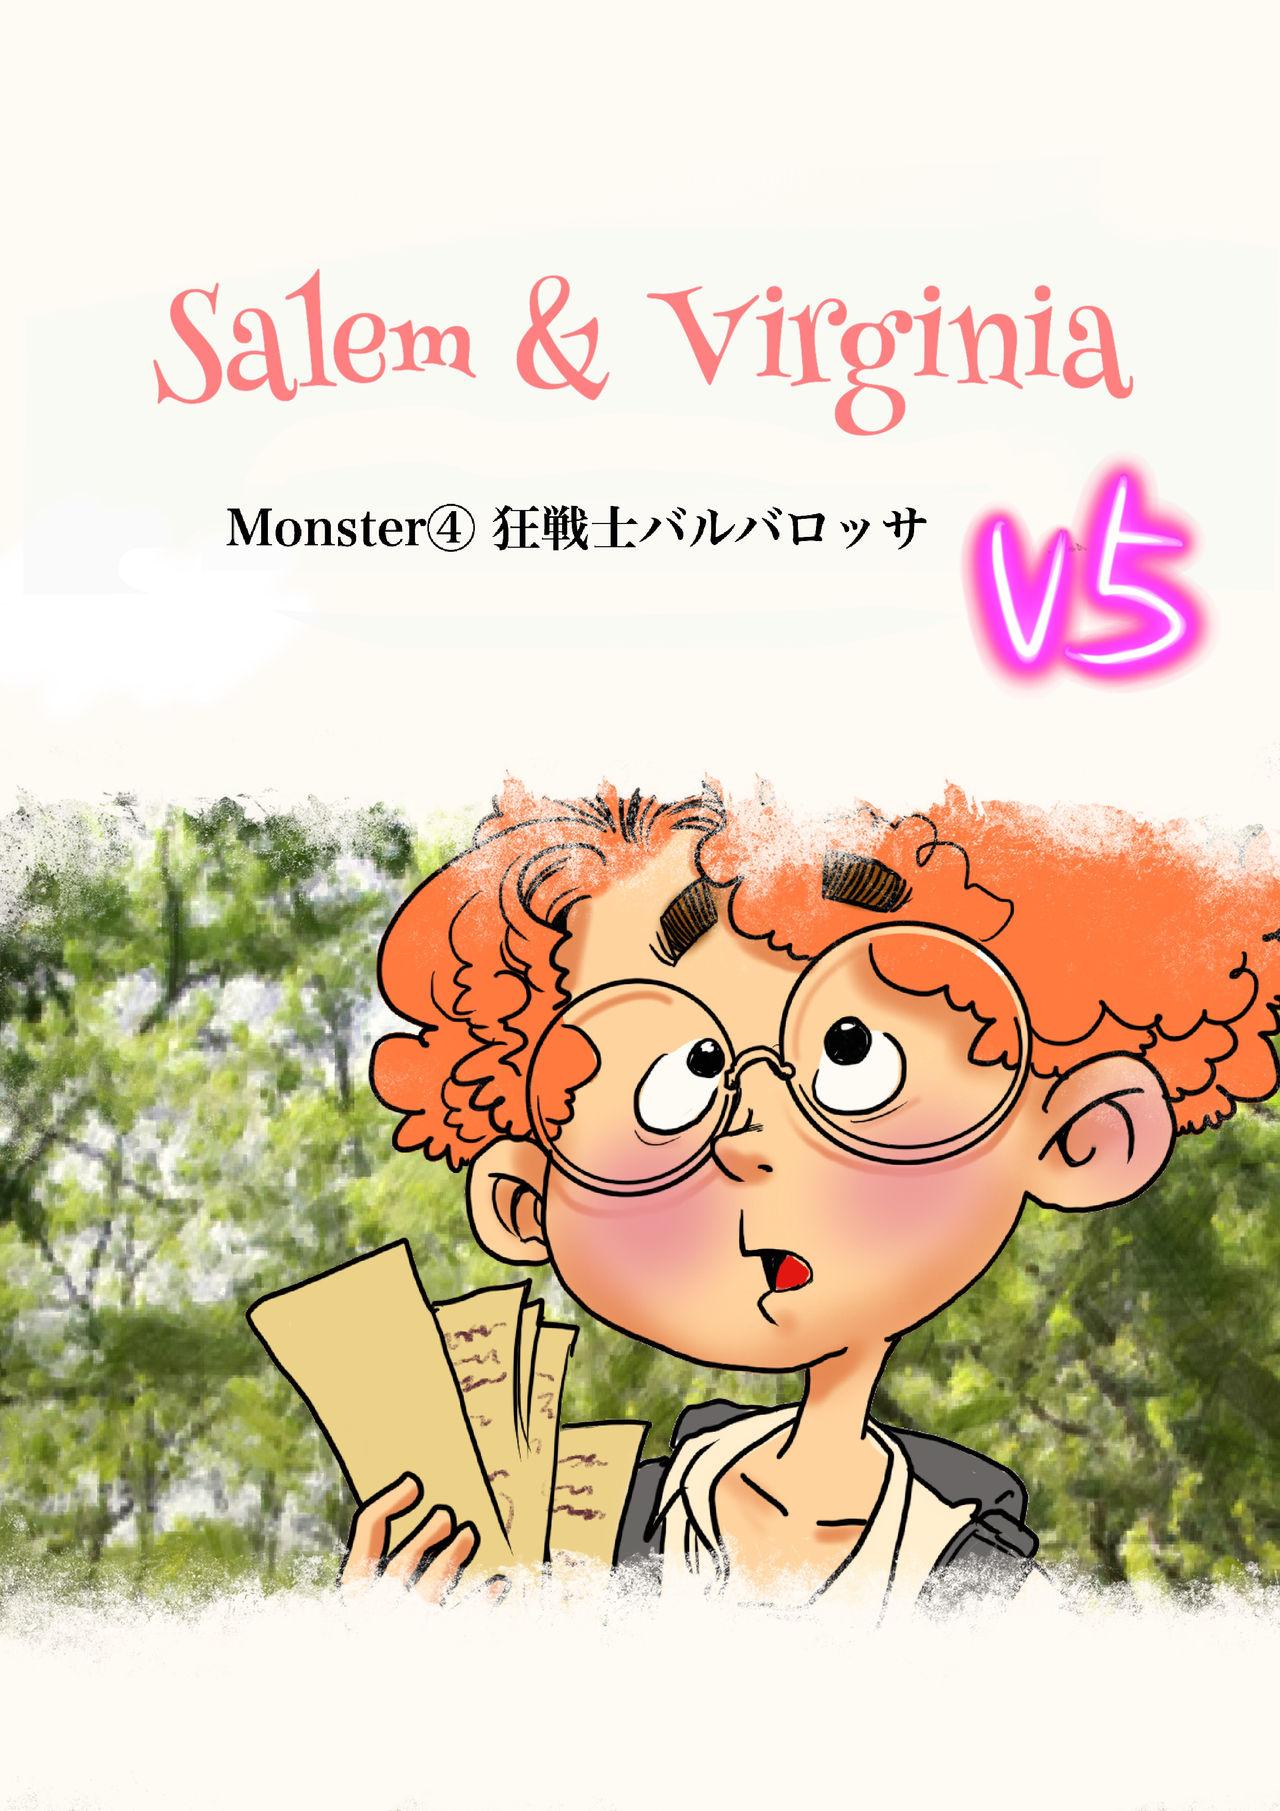 Salem & Virginia 107